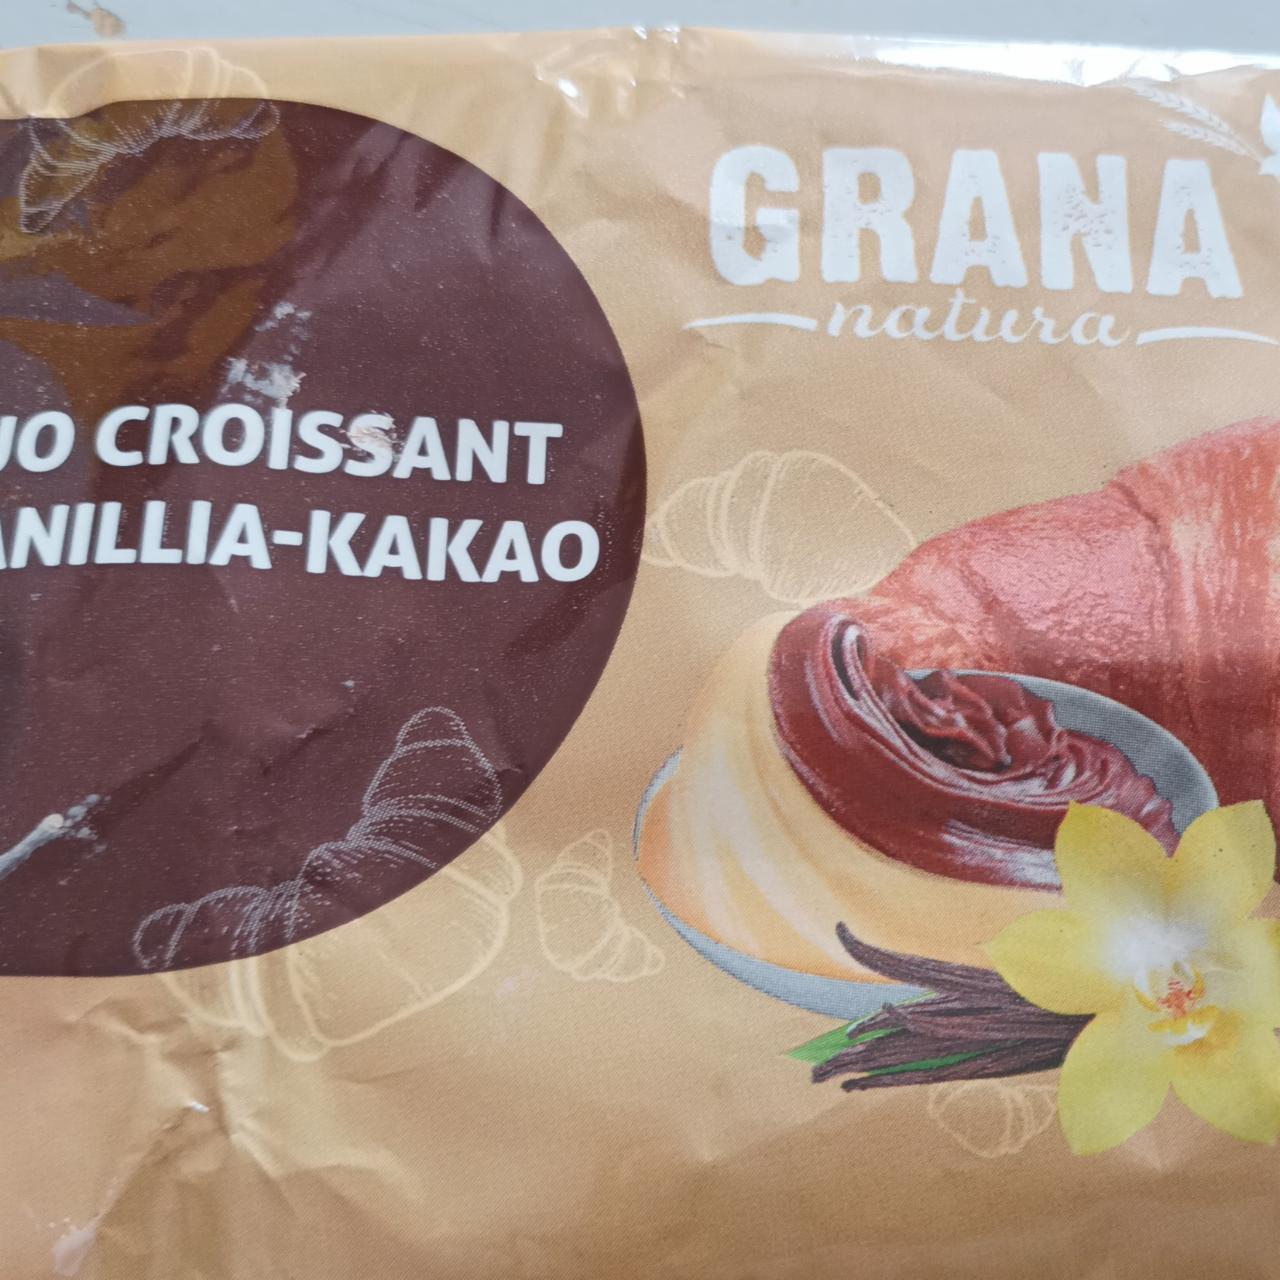 Zdjęcia - Duo croissant wanillia-kakao Grana natura